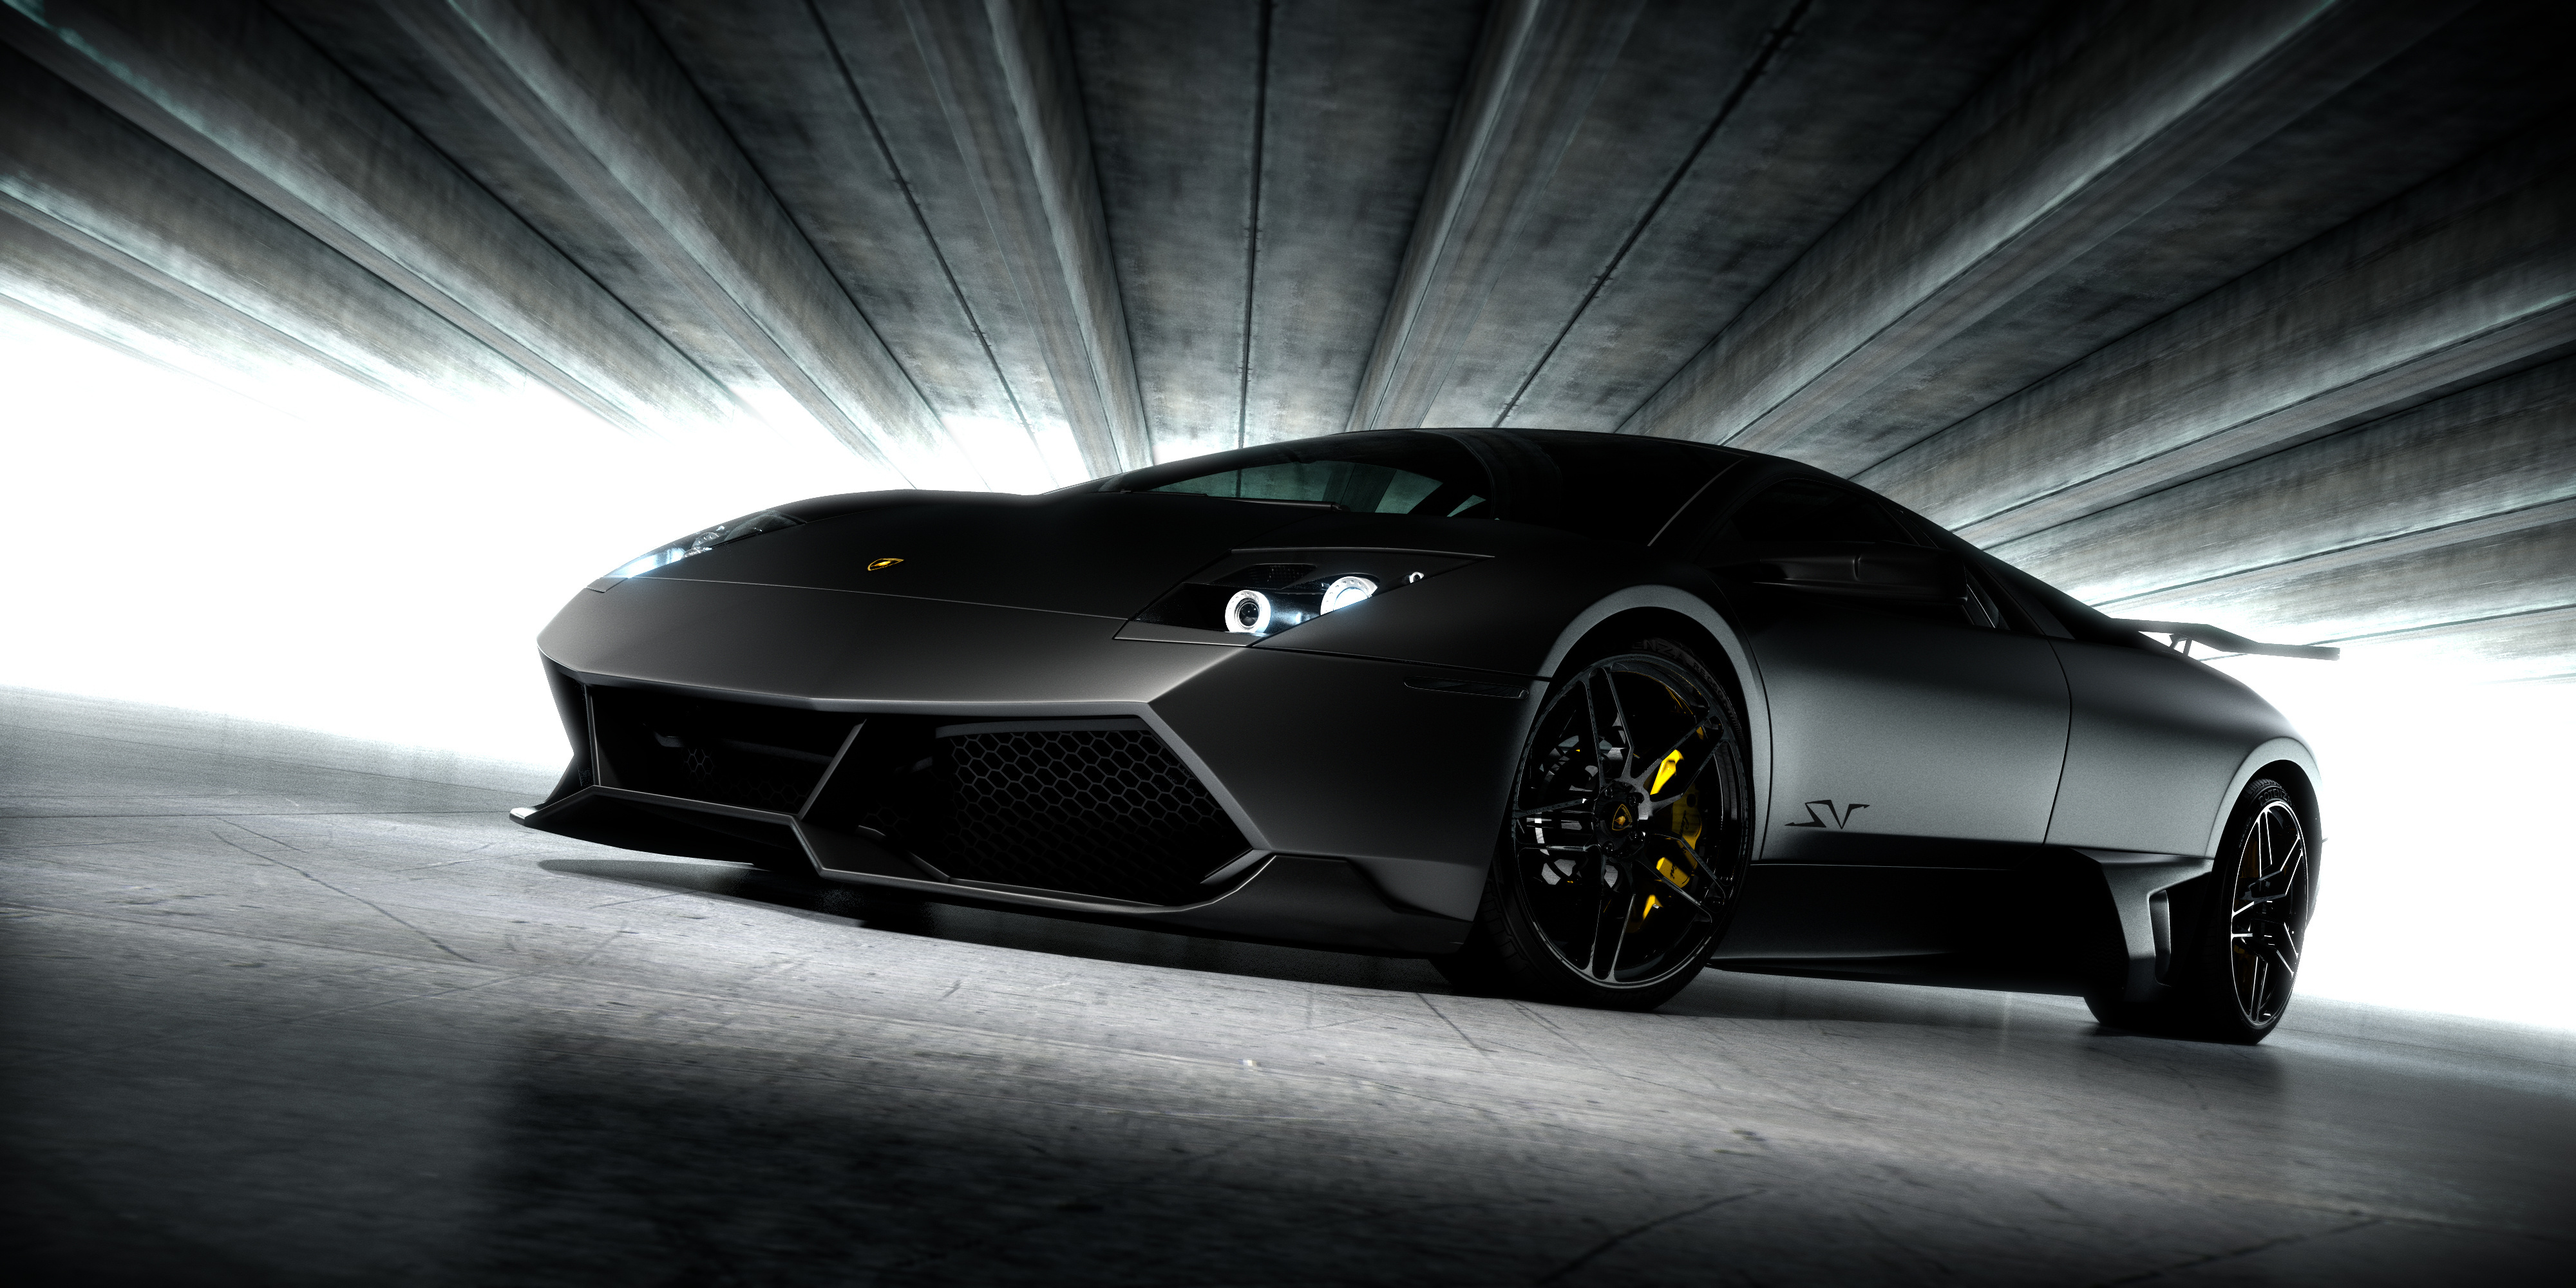 Télécharger des fonds d'écran Lamborghini Murcielago Lp HD